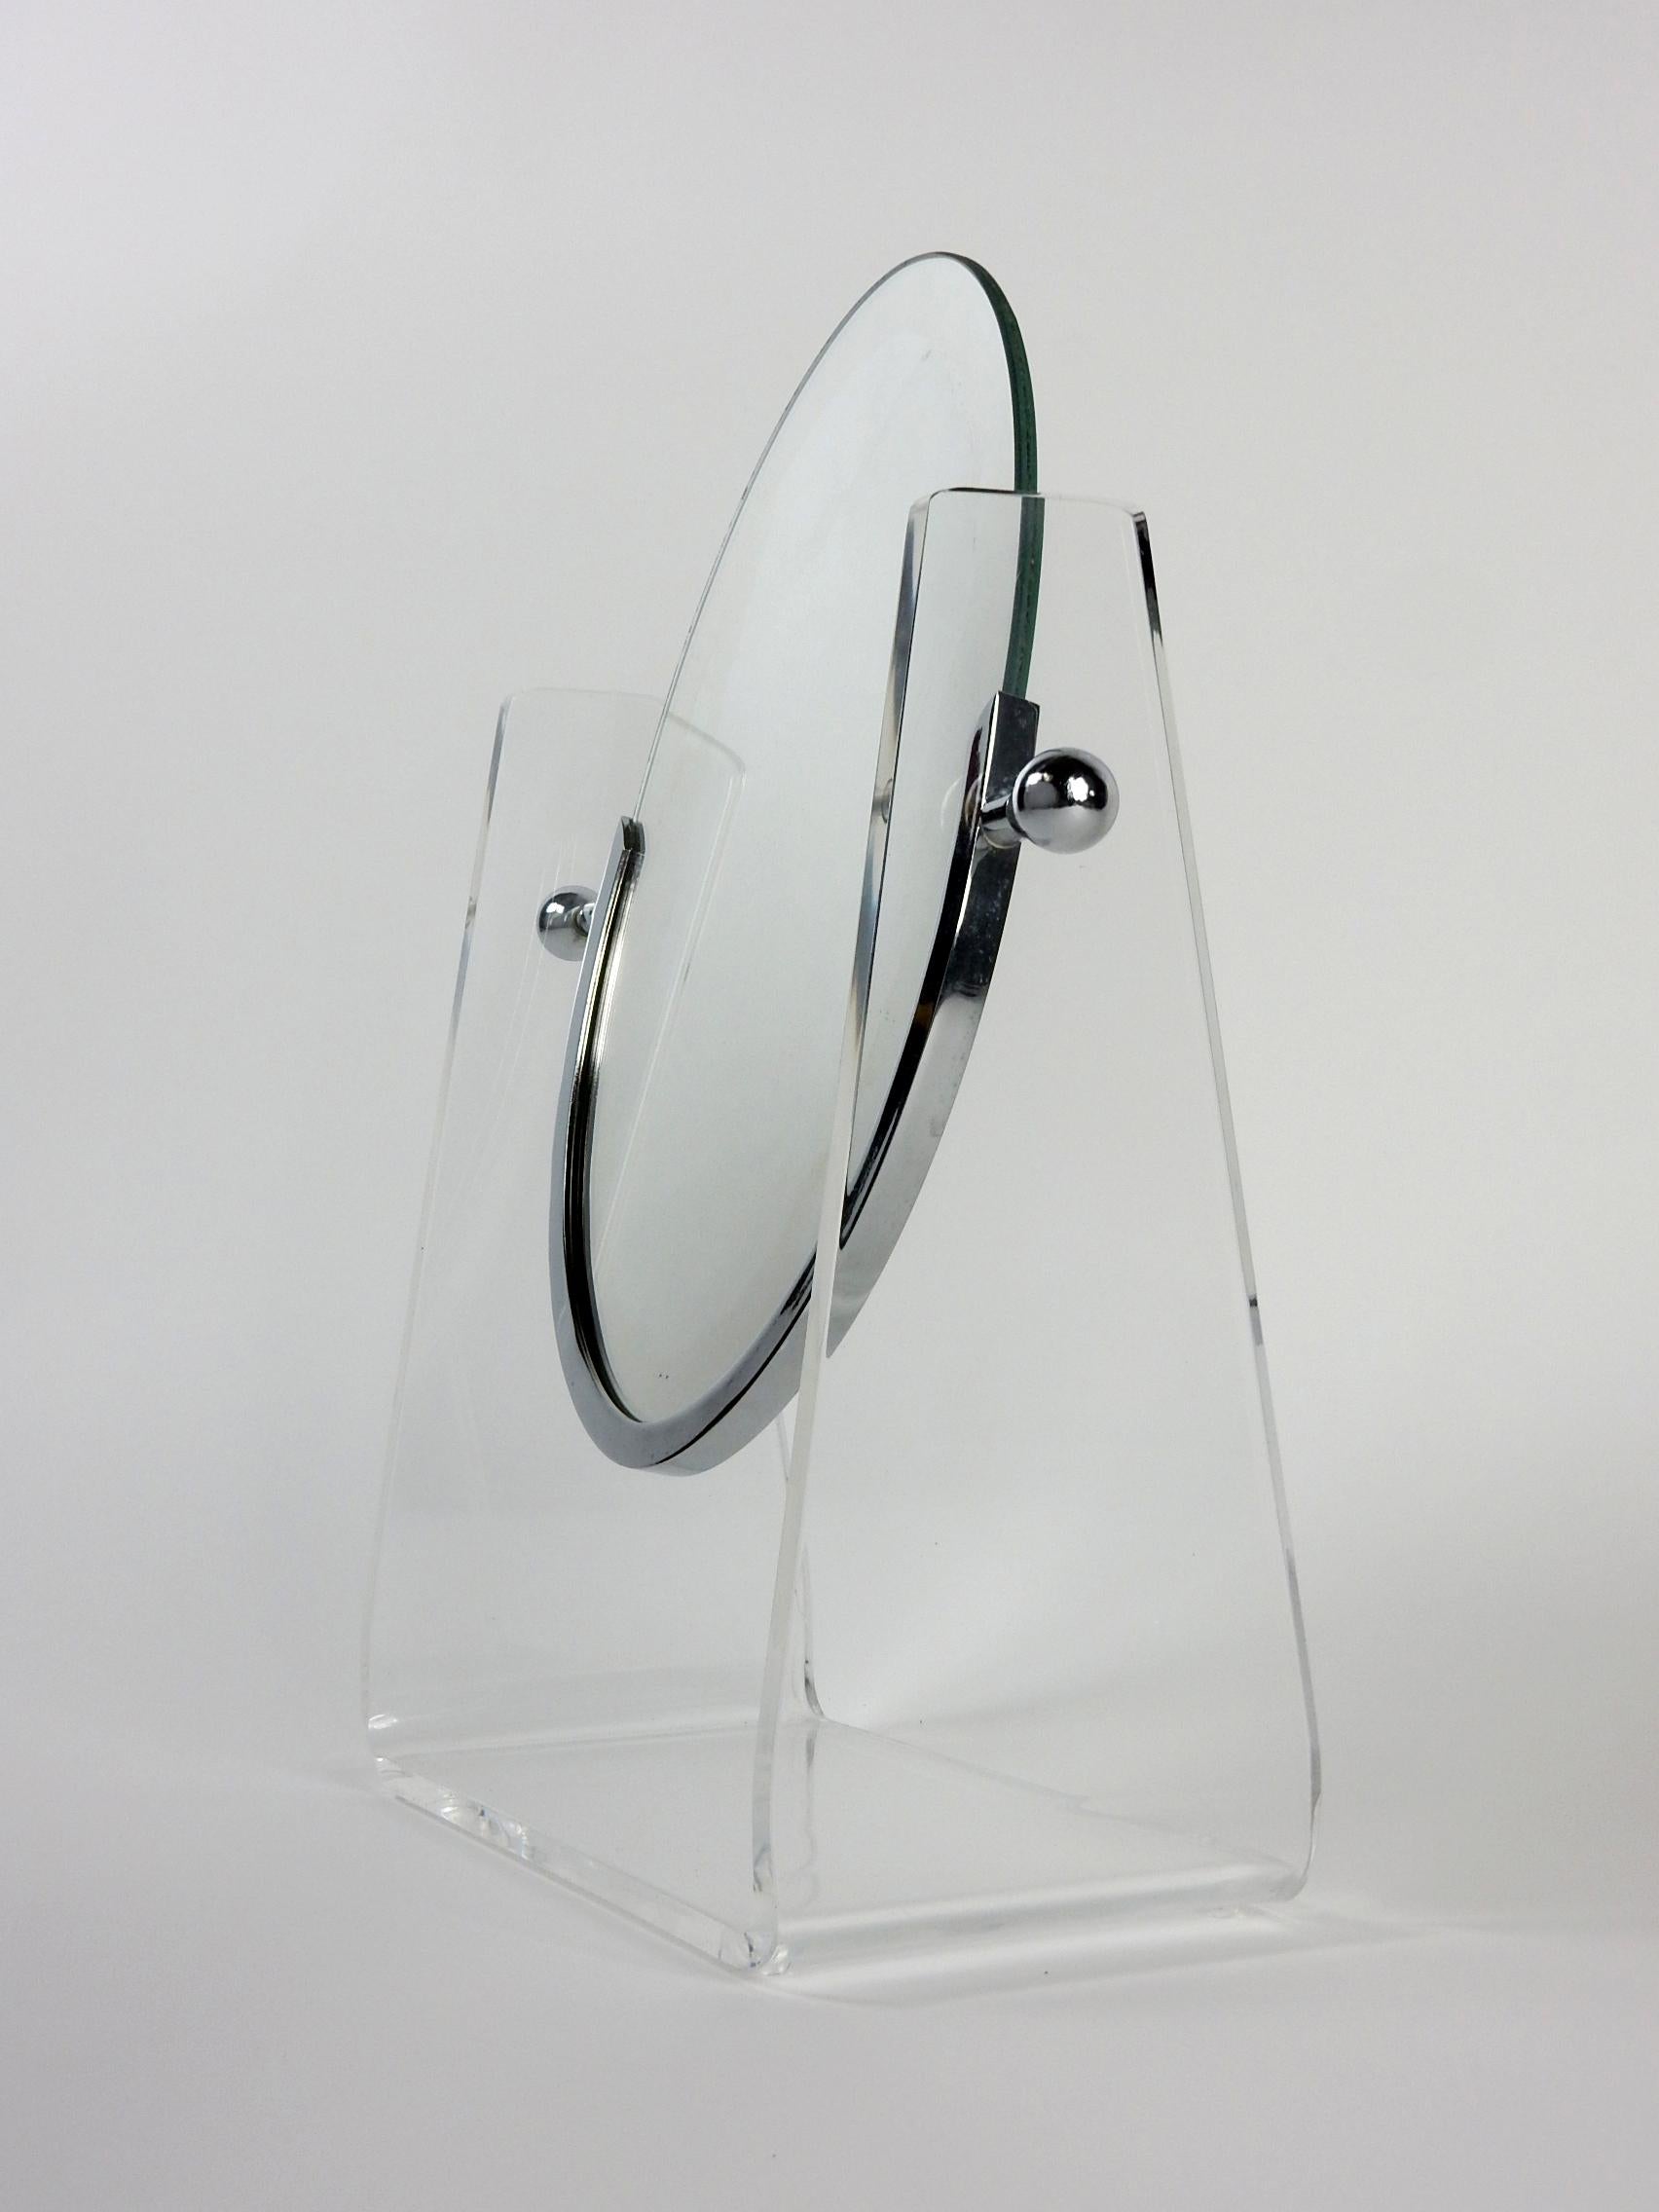 Beidseitiger Tischspiegel, entworfen von Charles Hollis Jones.
Ovaler Spiegel, aufgehängt in einem Ständer aus Lucite mit vernickeltem Rahmen und Kugelverstellern.
Schwenkbar in der Mitte mit Einstellkugeln, um den gewünschten Winkel zu